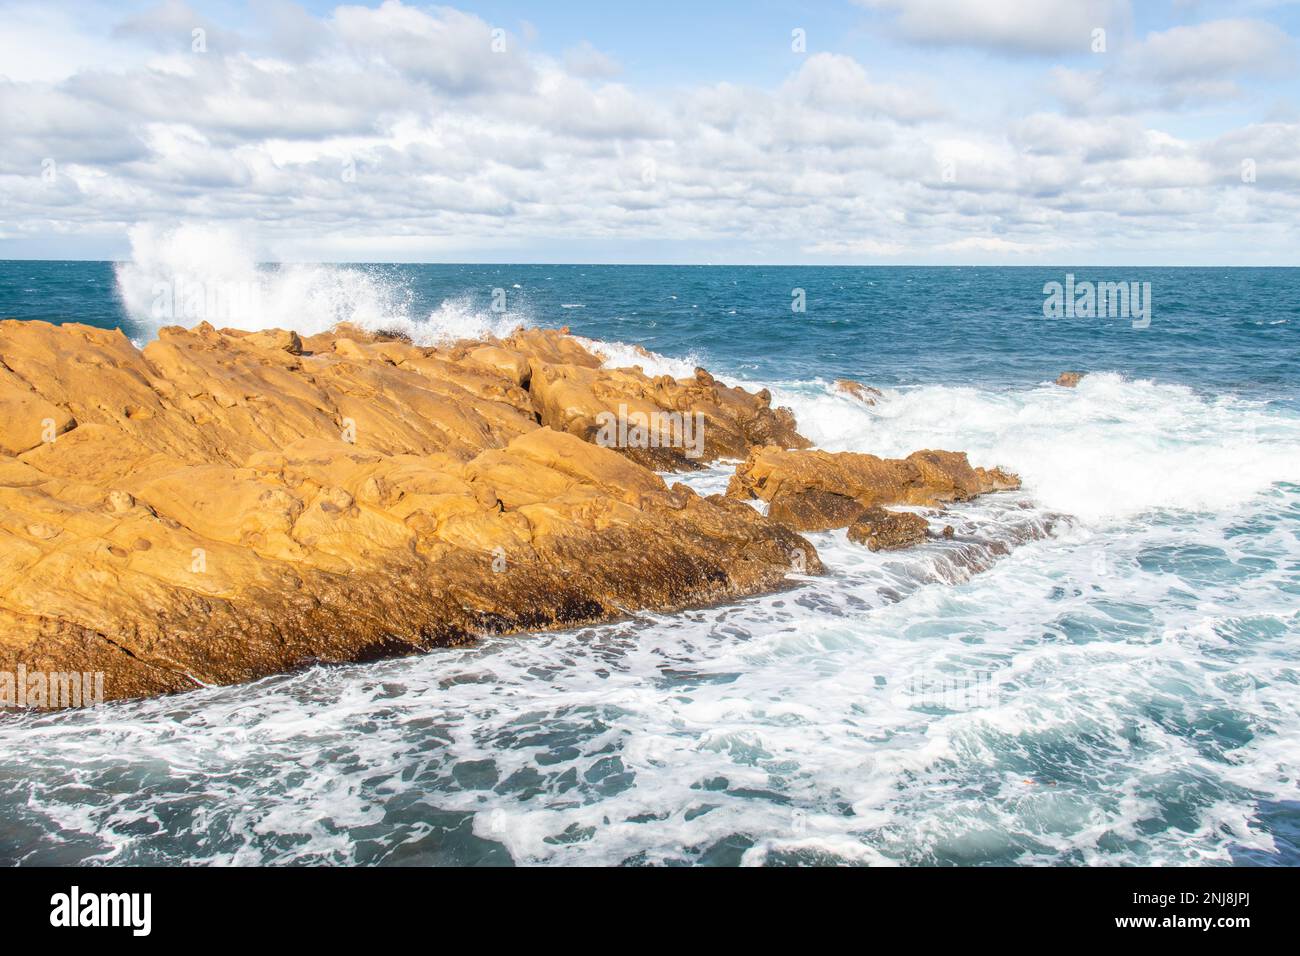 Port aux Princes, Tunisie, falaises et rochers, paysage de la mer Méditerranée avec beau ciel bleu. Escapade céleste. Takelsa Banque D'Images